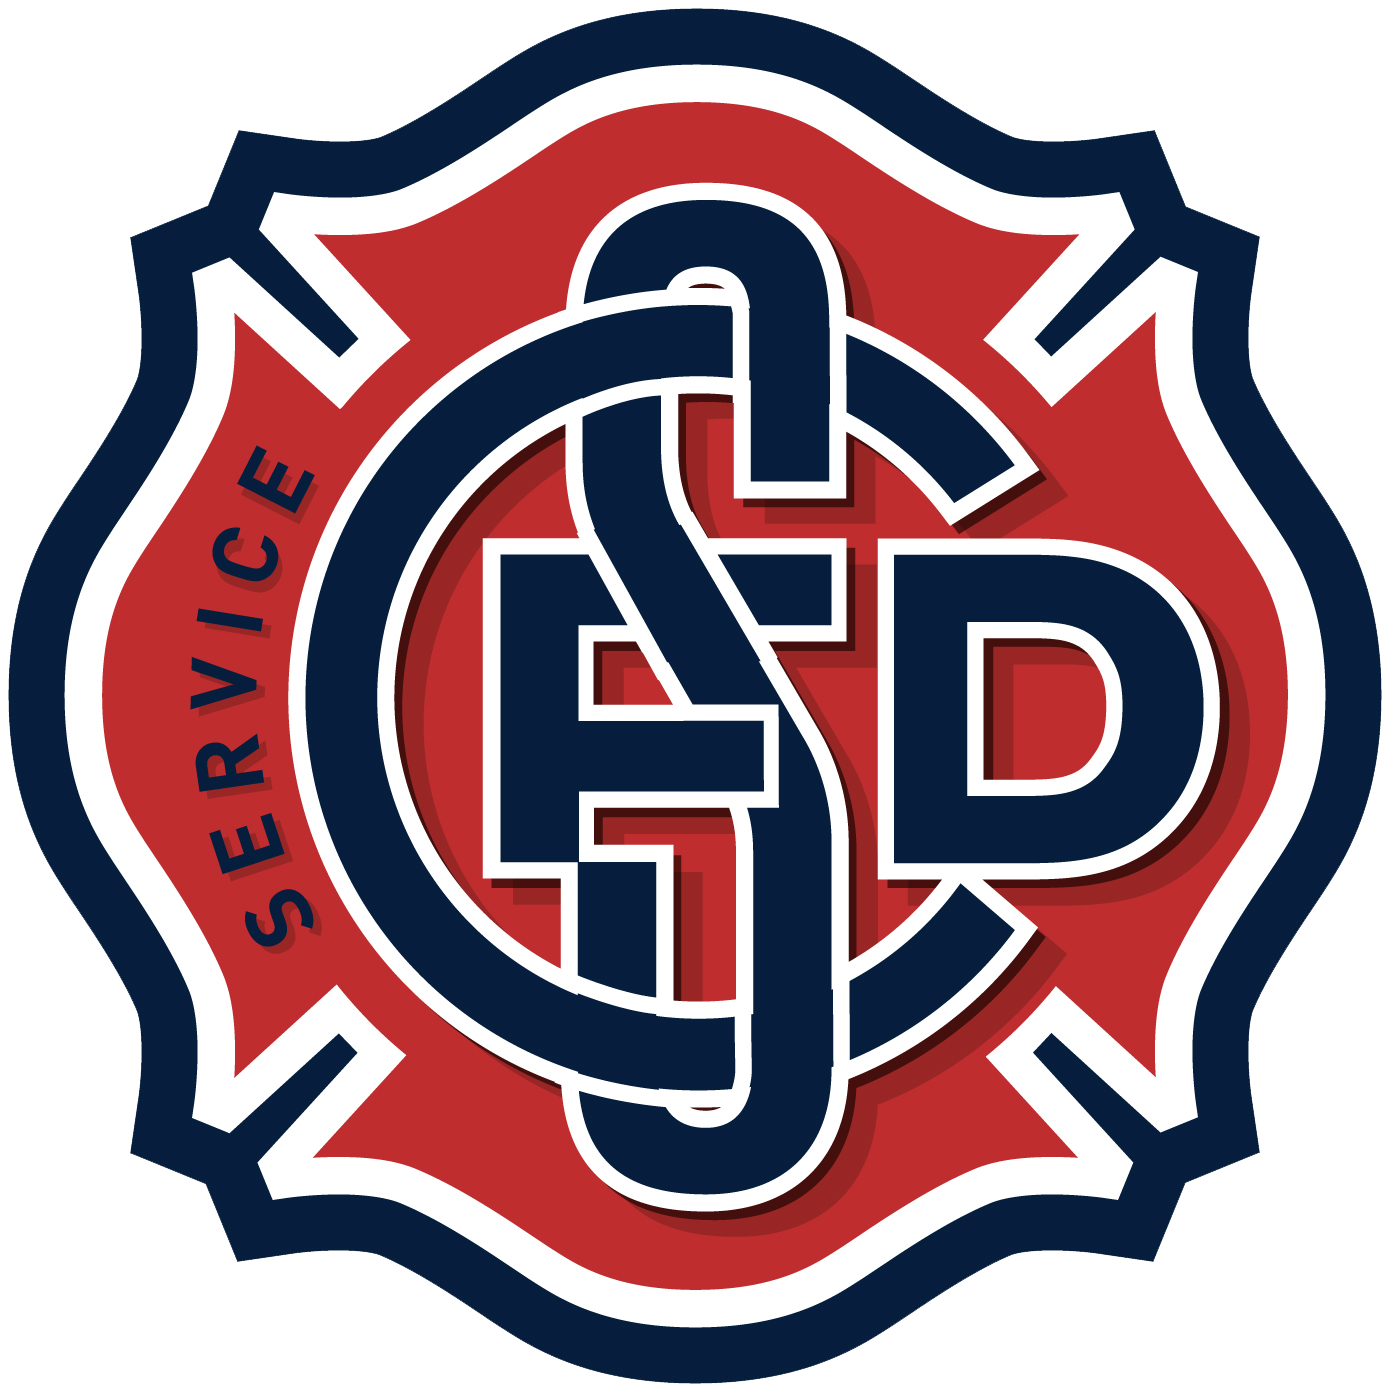 Fire department logo clipart